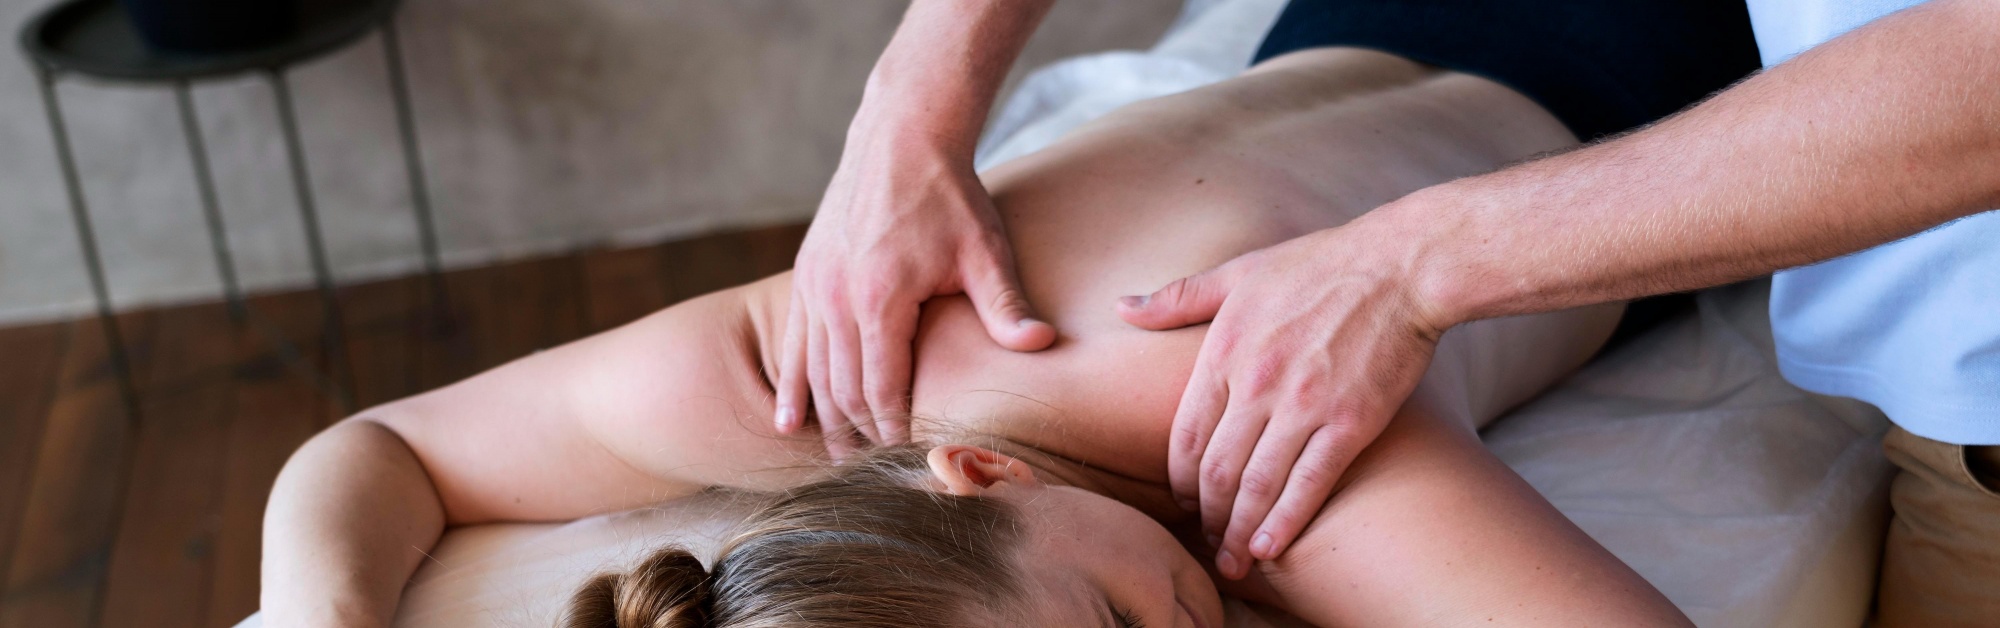 Лечебный массаж спины и шеи — показания и польза, медицинский массаж поясницы | Клиника Ткачева